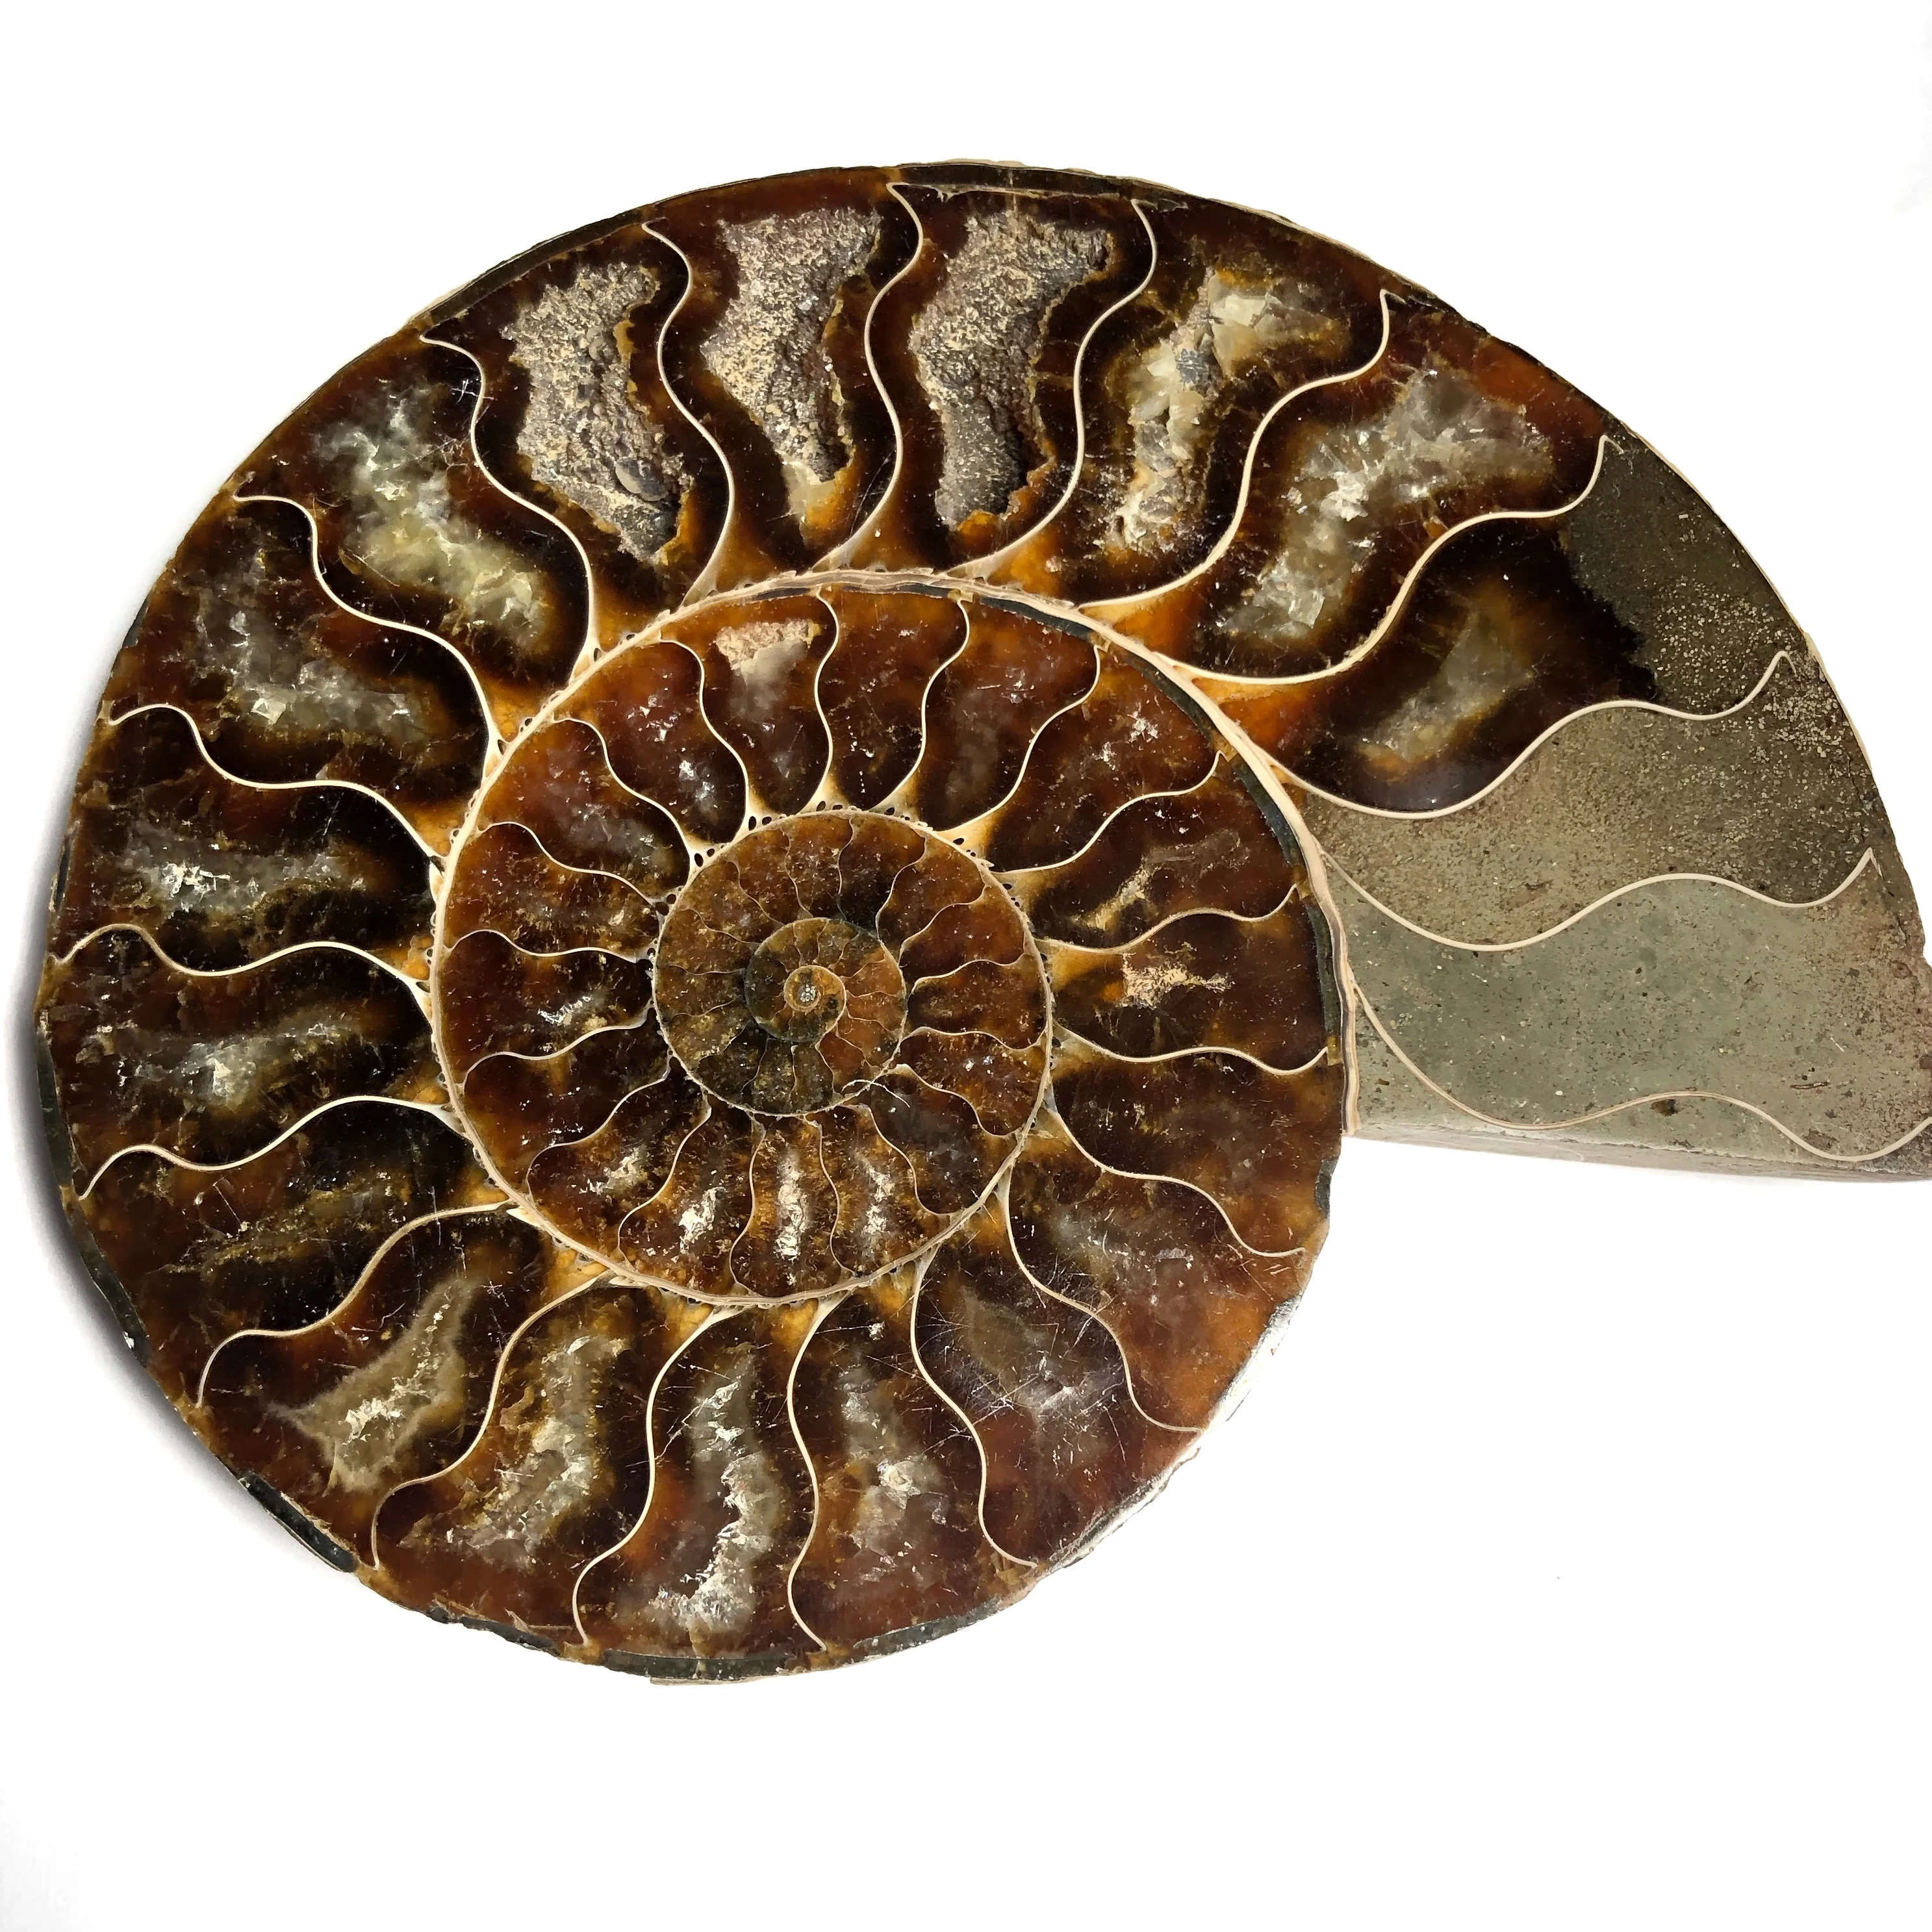 Pair of Madagascar Ammonite Fossil Nautilus Shell Cut Slices Specimen #ID-3307 